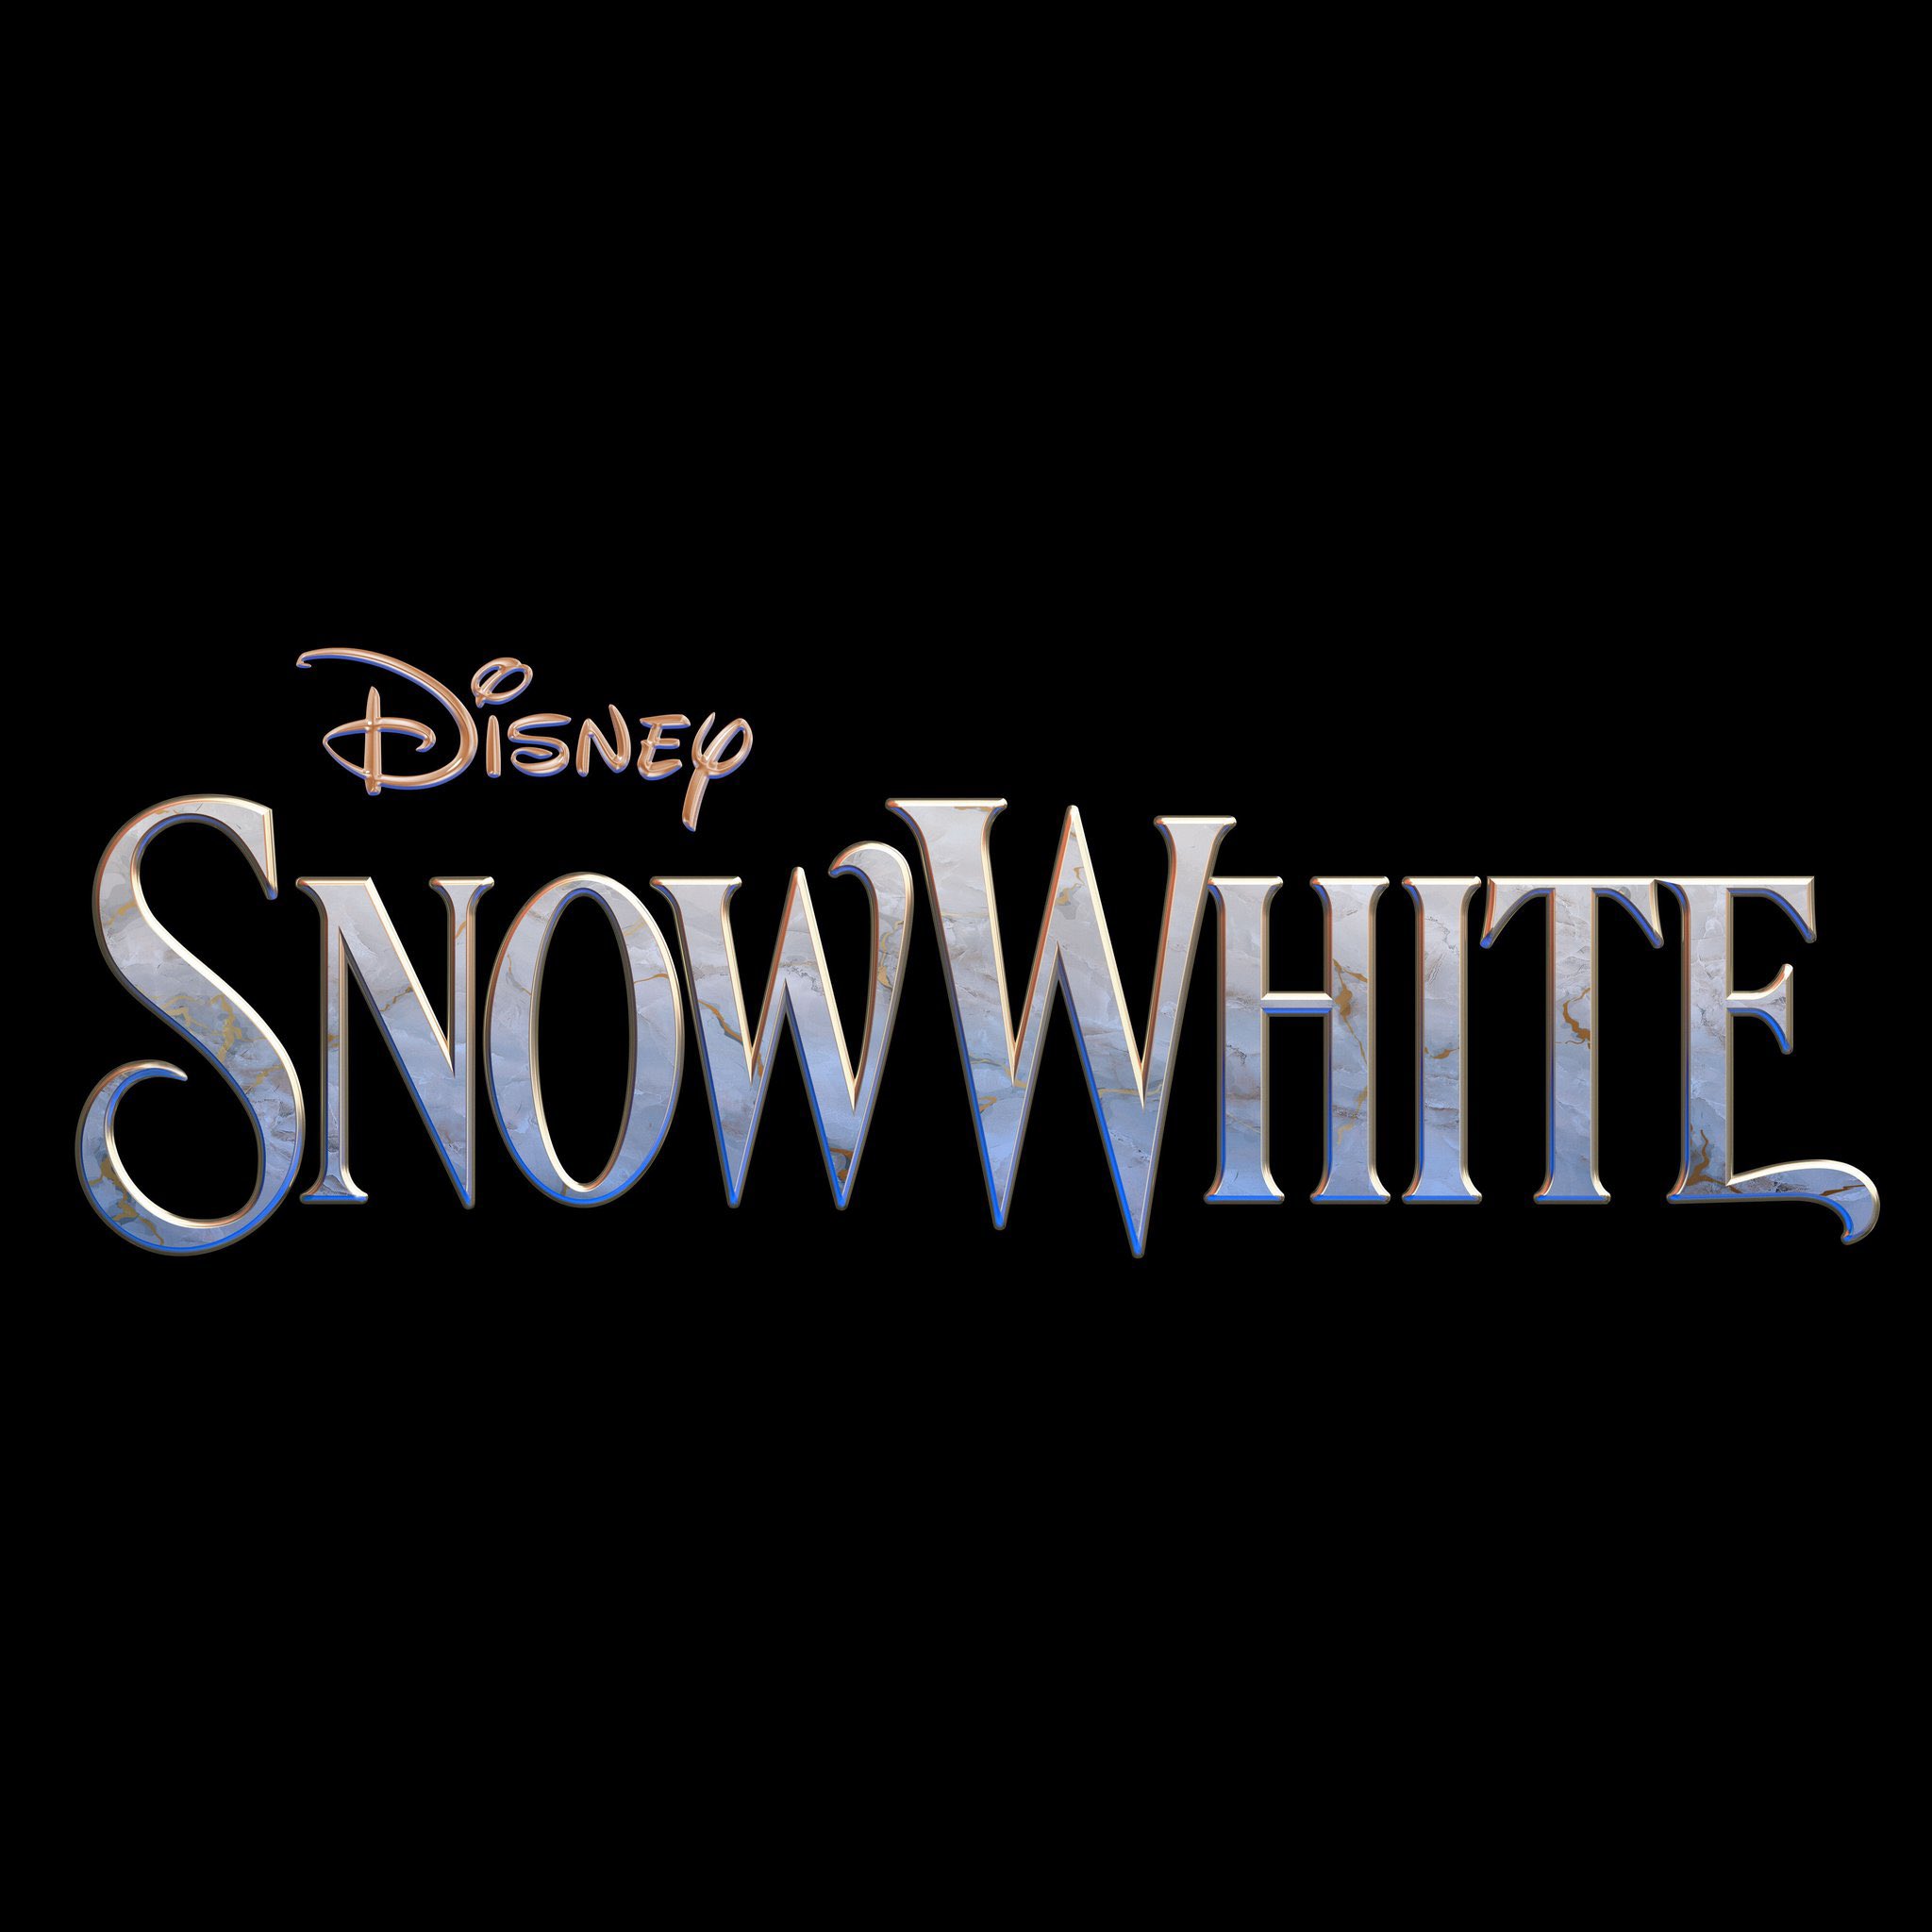 Peter Dinklage detona novo live-action de Branca de Neve e os Sete Anões:  'Muita hipocrisia' - Notícias de cinema - AdoroCinema